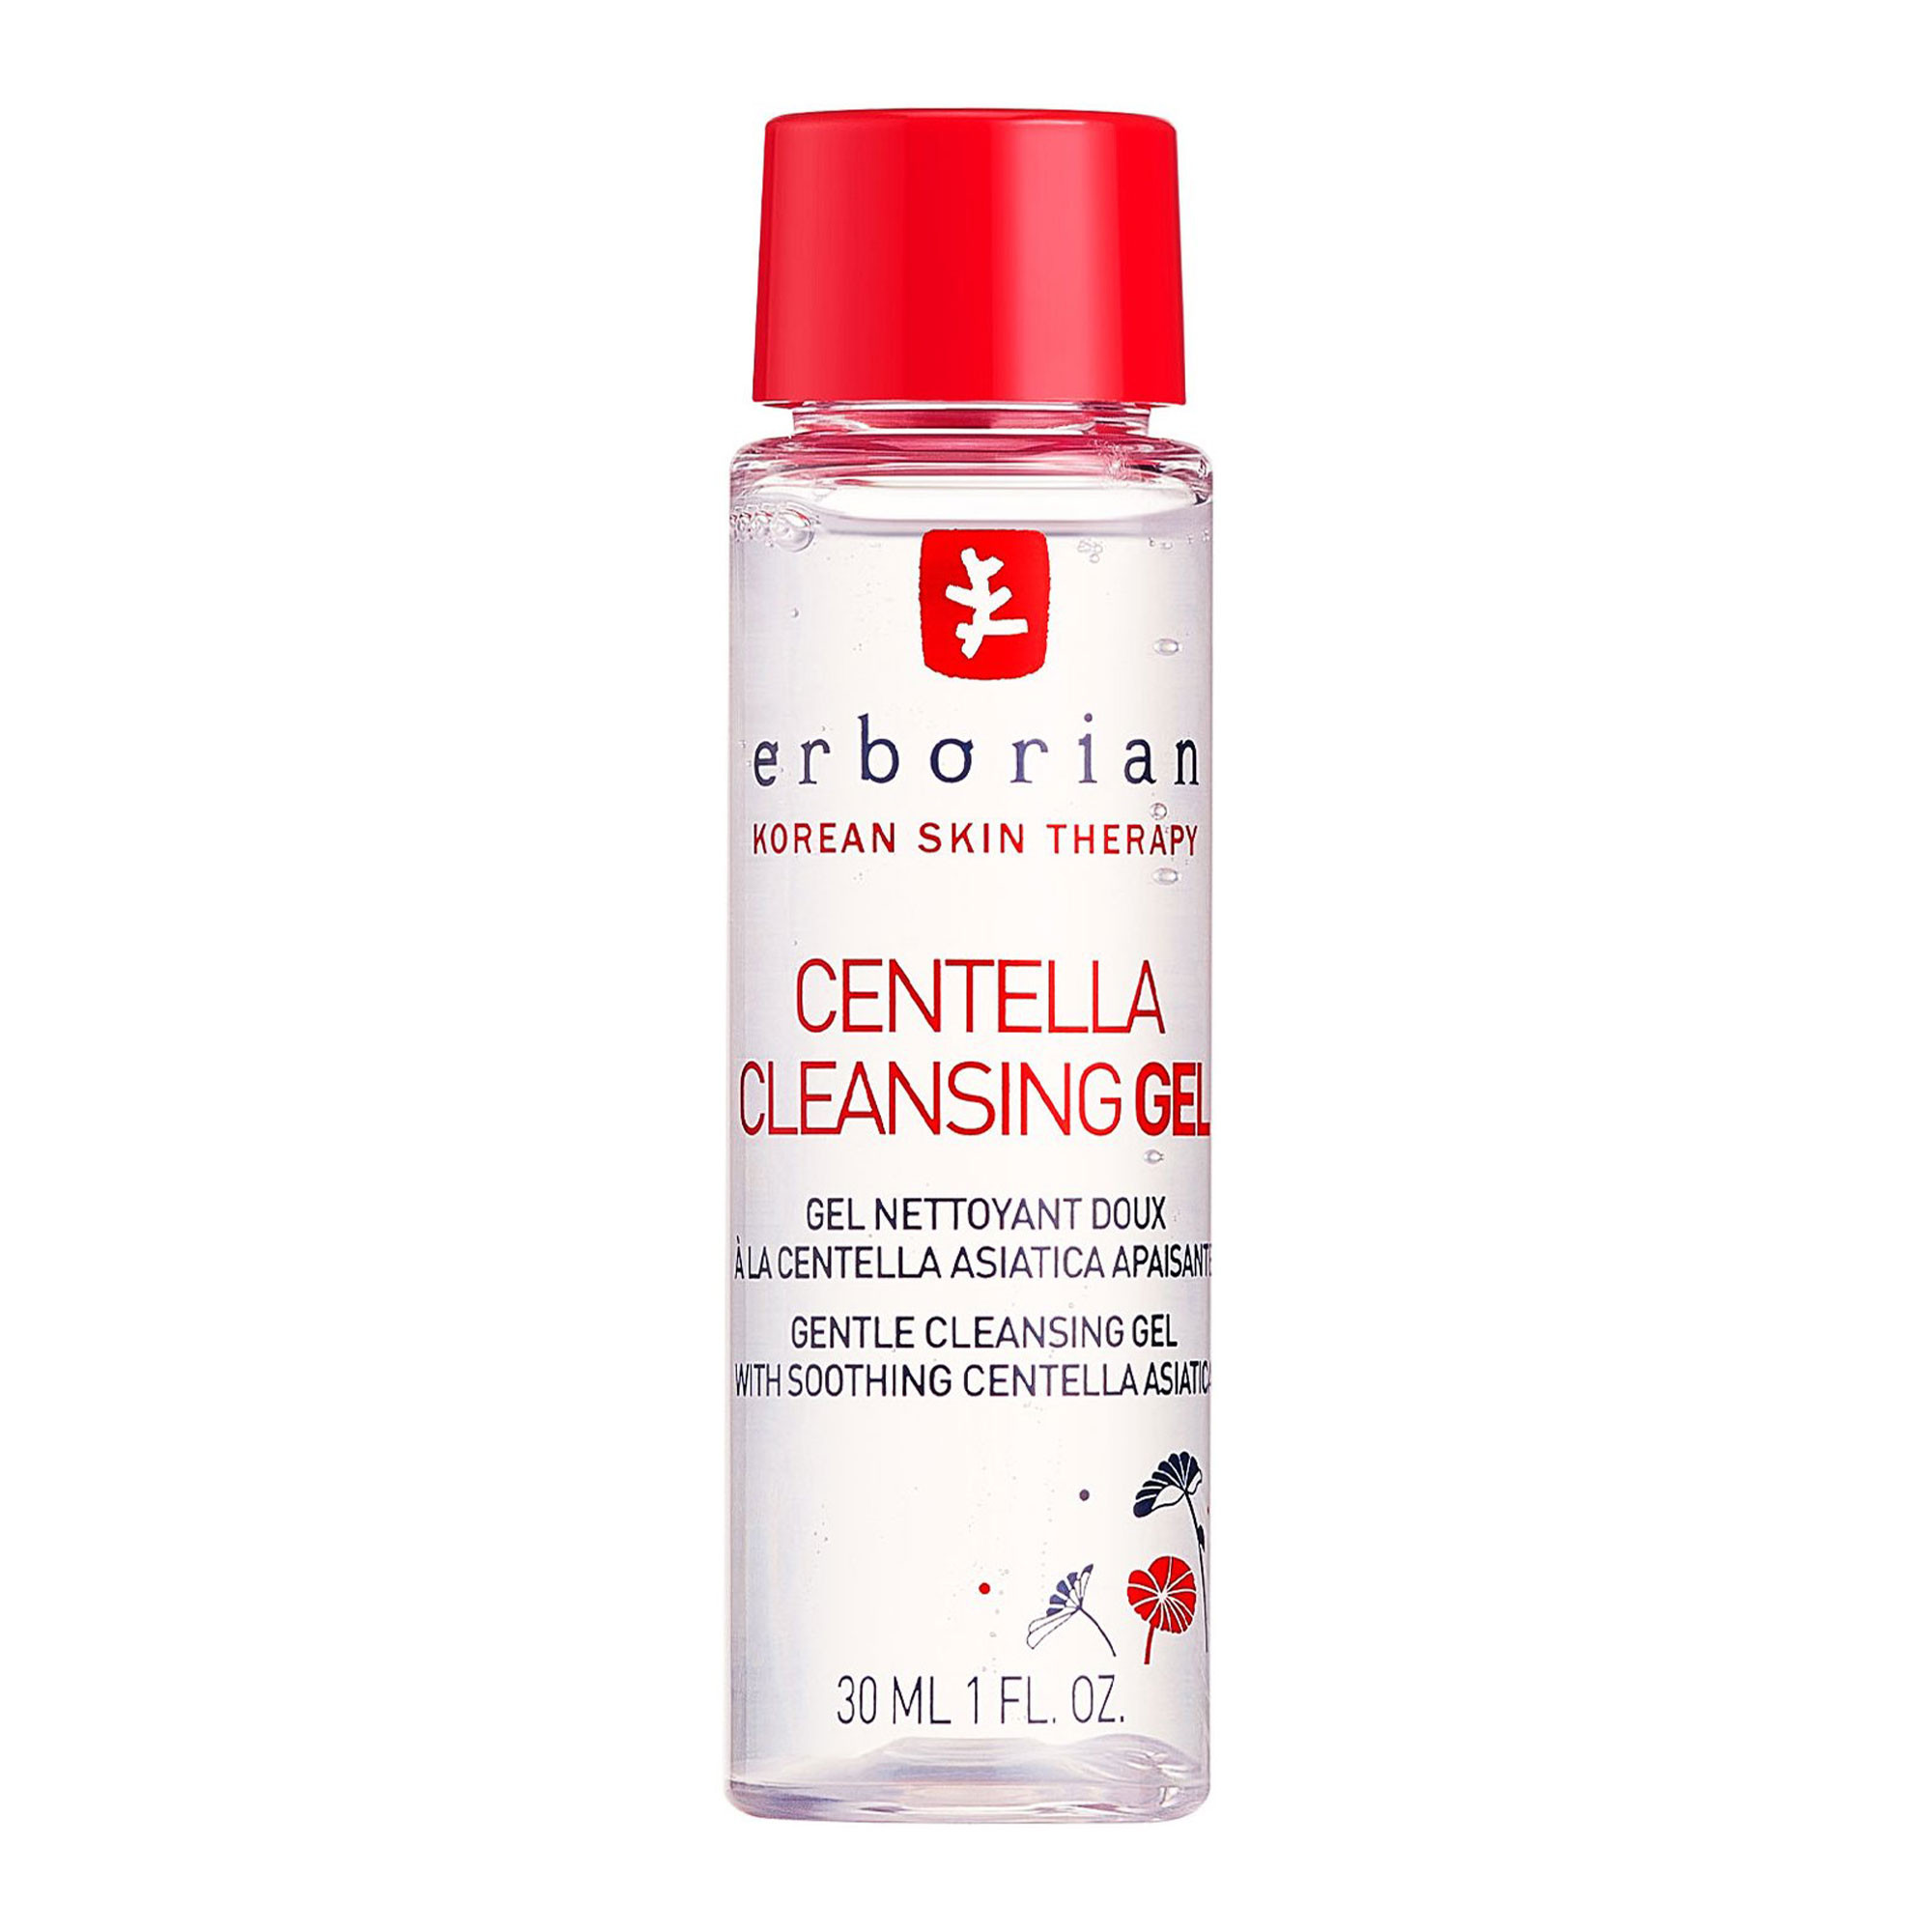 Erborian Centella Cleansing Gel - Гель для очищения лица Центелла